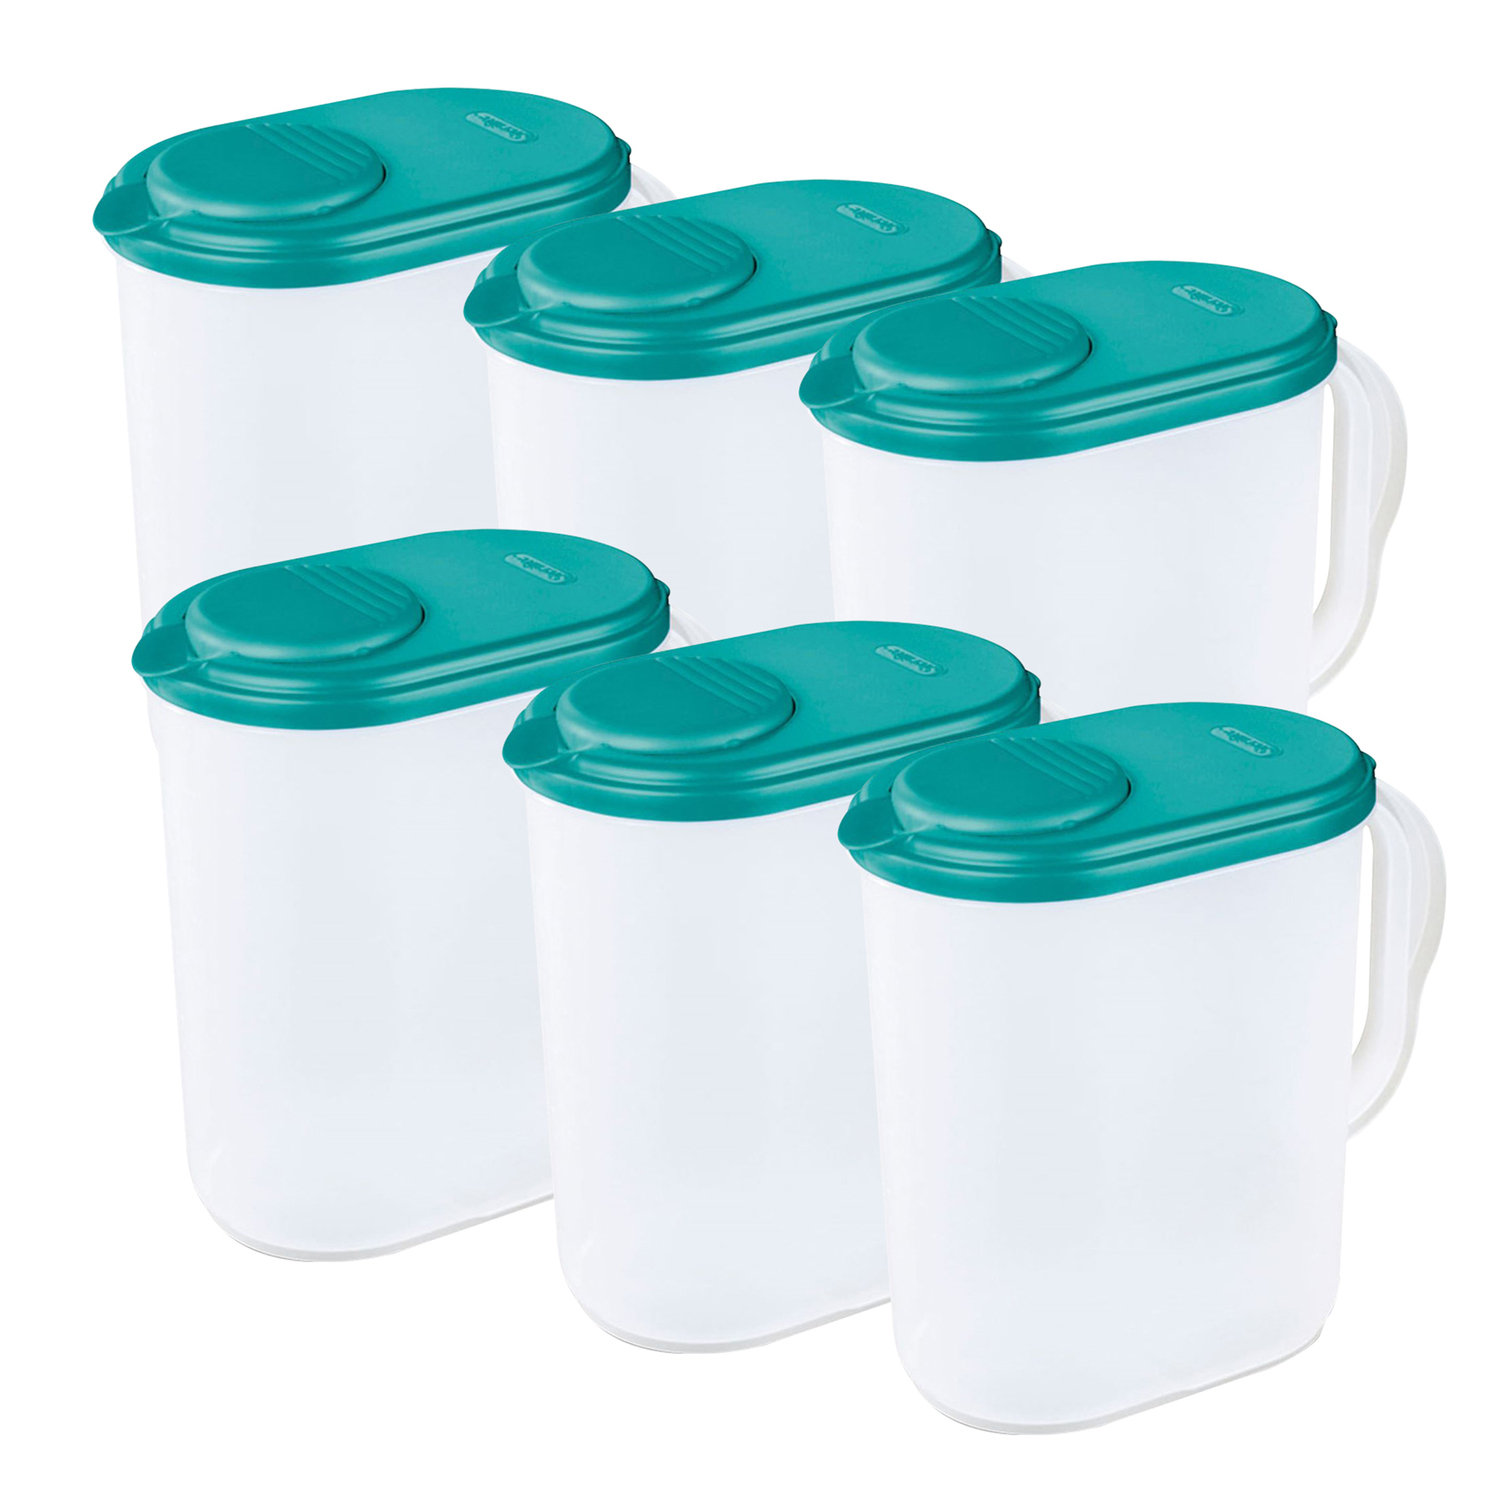 6 Gallon Round Plastic Buckets (White) w/ Grip, Gasket, & Lid